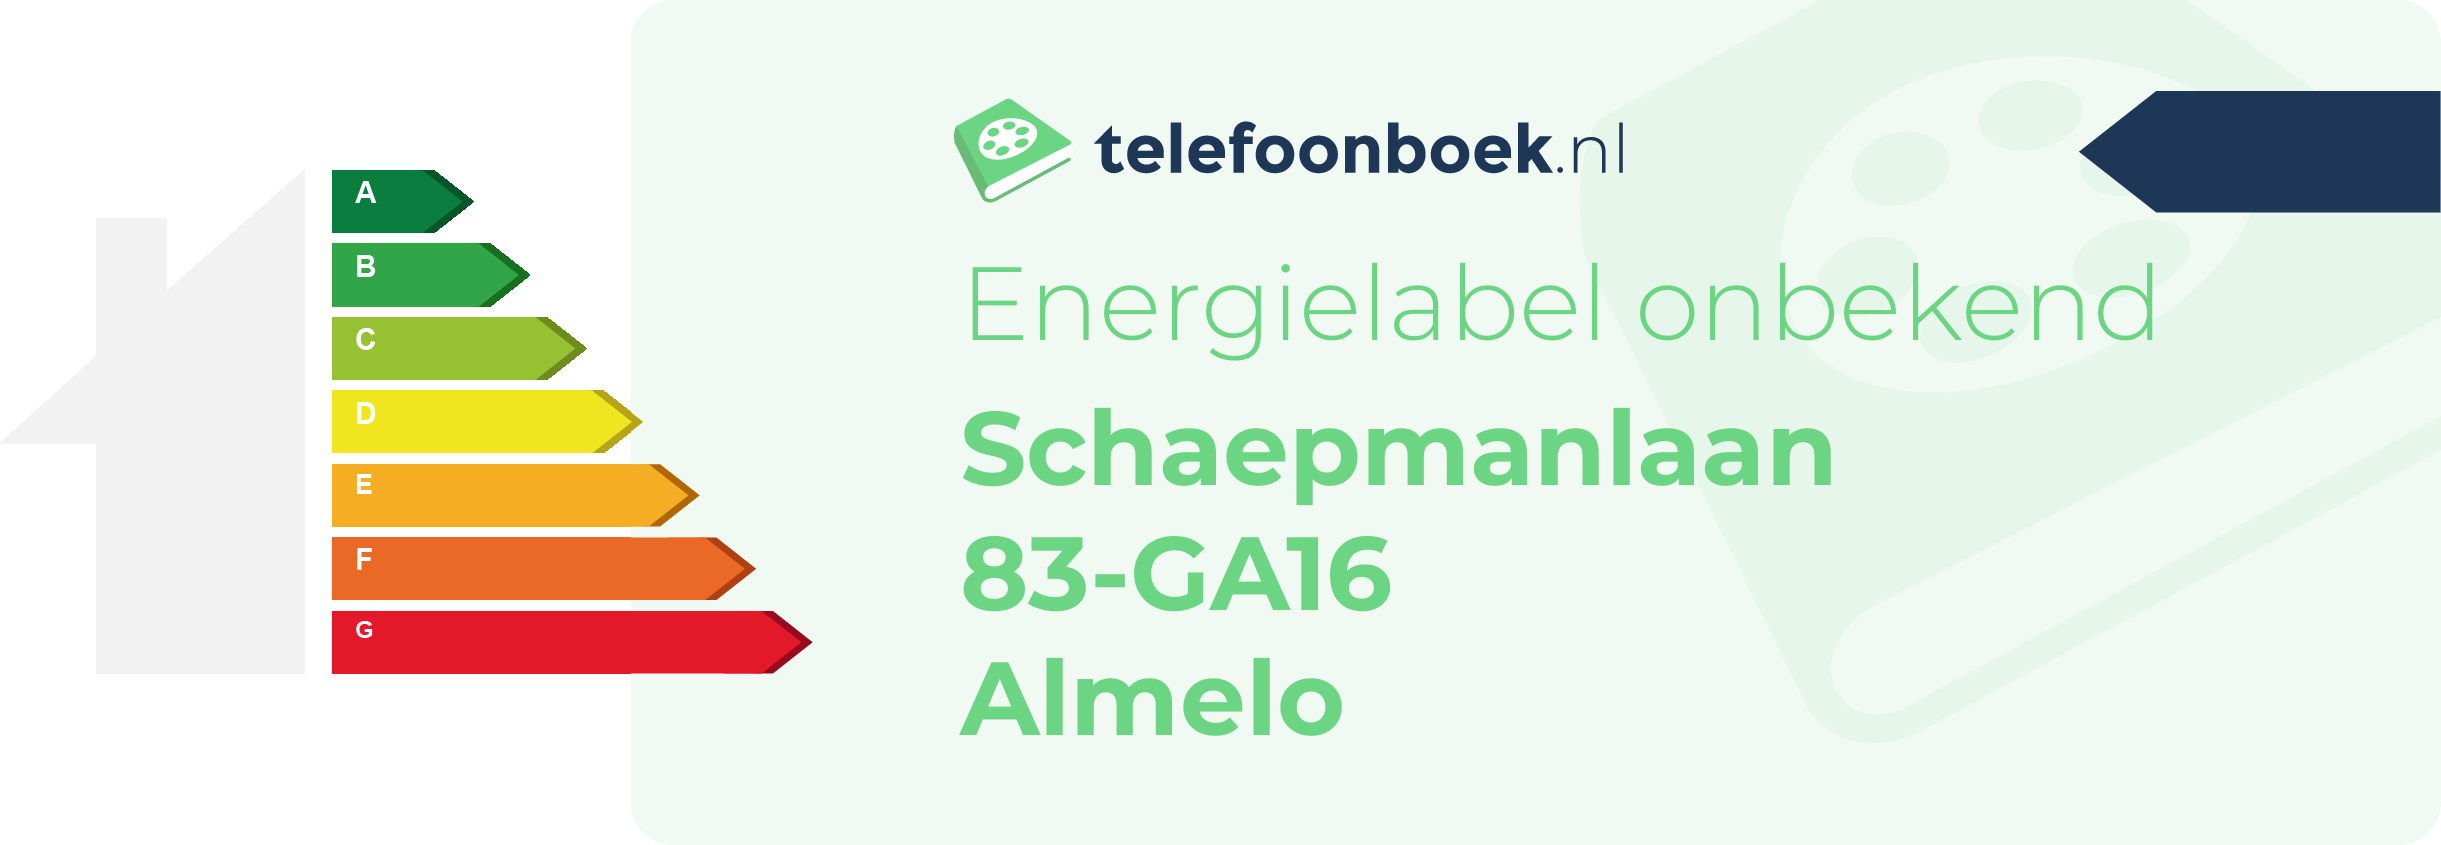 Energielabel Schaepmanlaan 83-GA16 Almelo